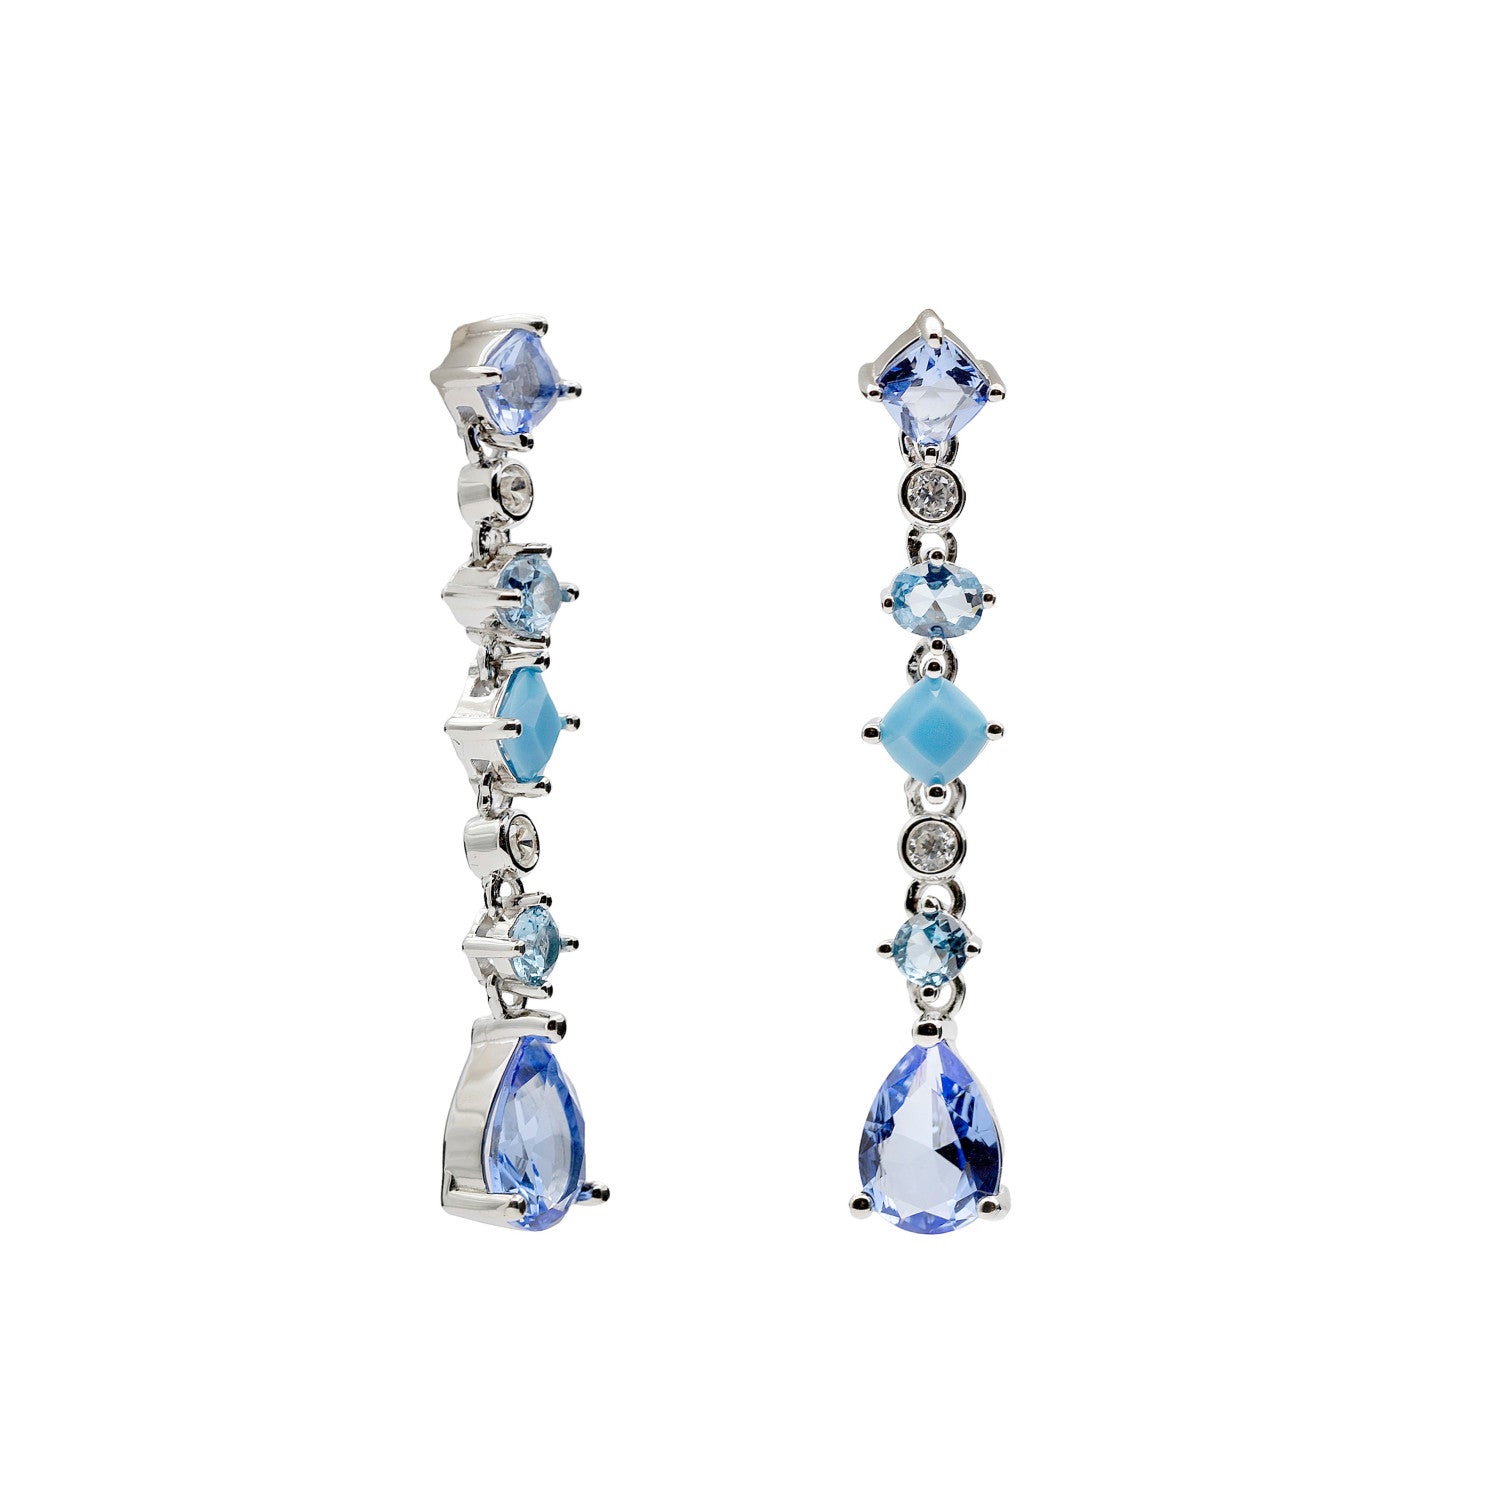 Pendientes largos con gemas en tonos azules en diferentes formas